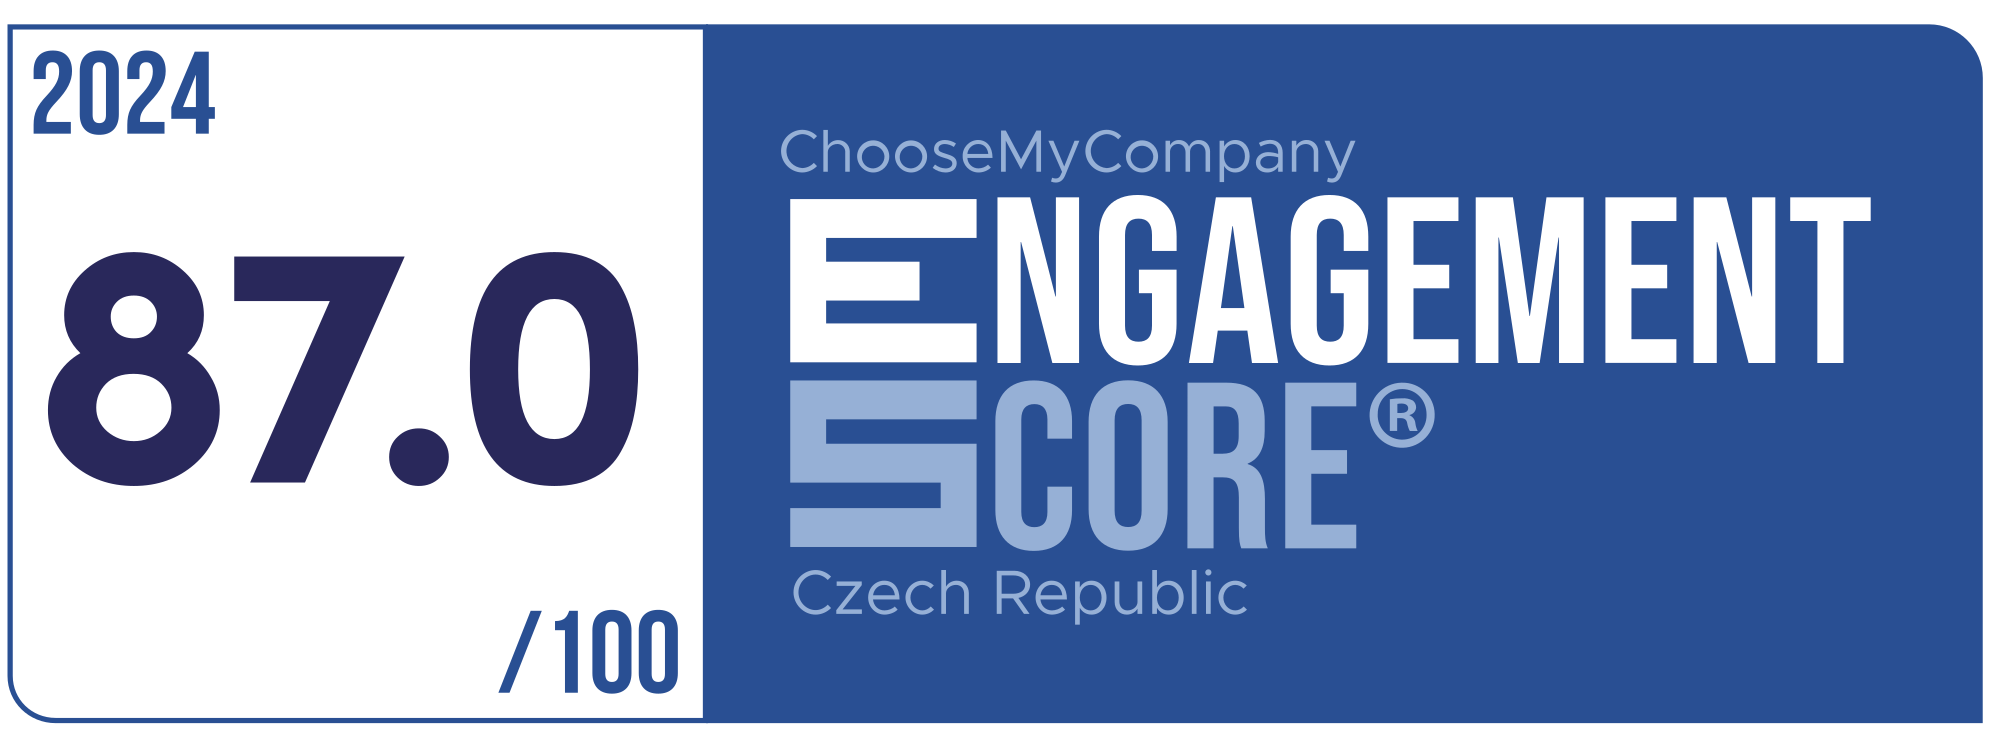 Label Engagement Score 2024 Czech Republic